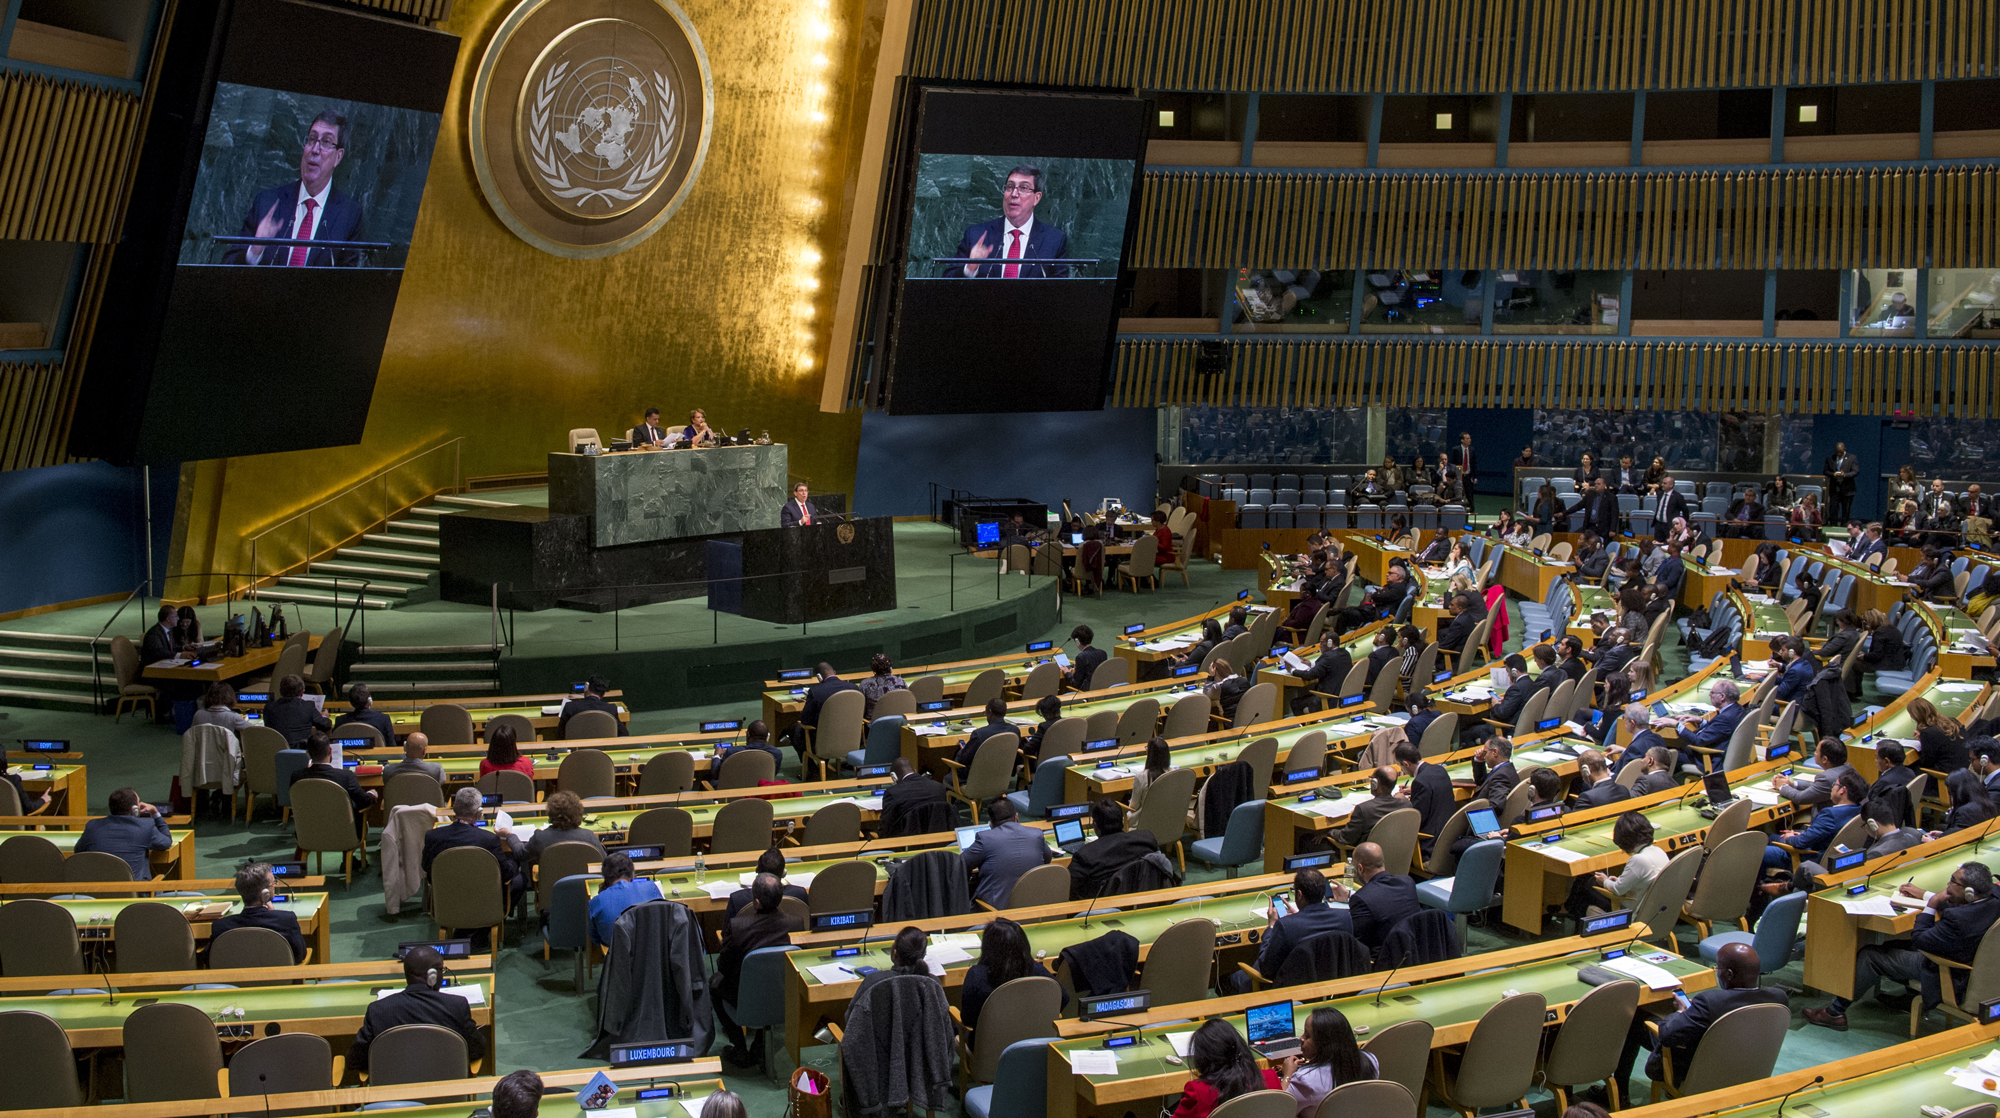 Резолюцию Генассамблеи поддержала 191 страна, включая Россию Фото: © GLOBAL LOOK press/Cia Pak